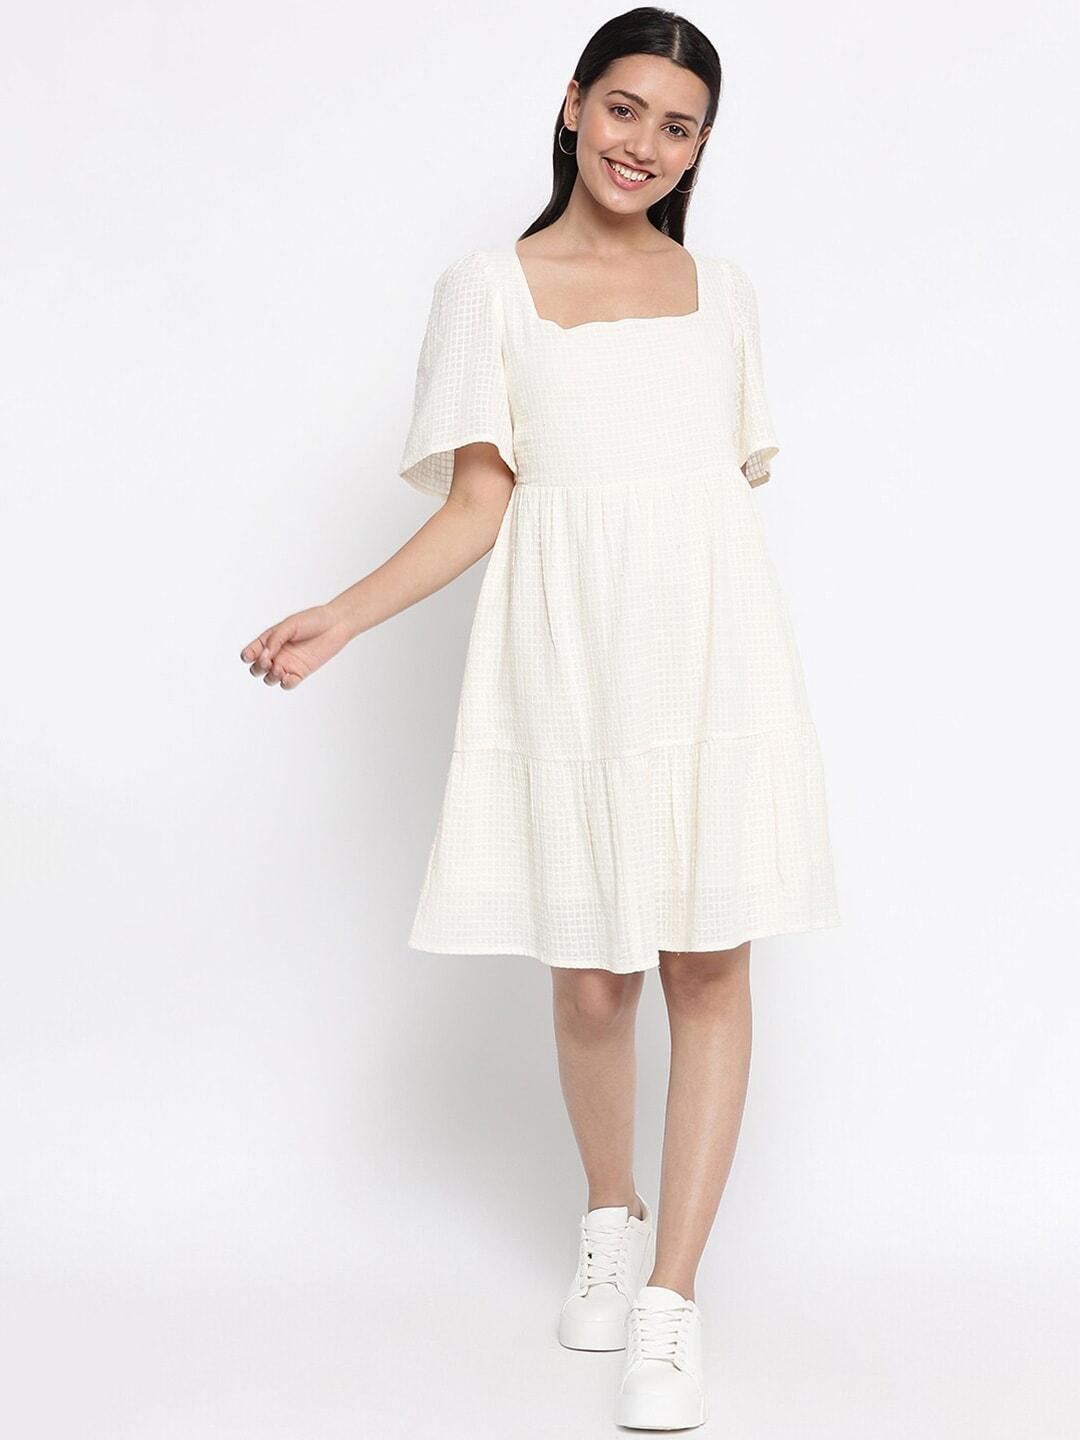 fabindia white cotton dress